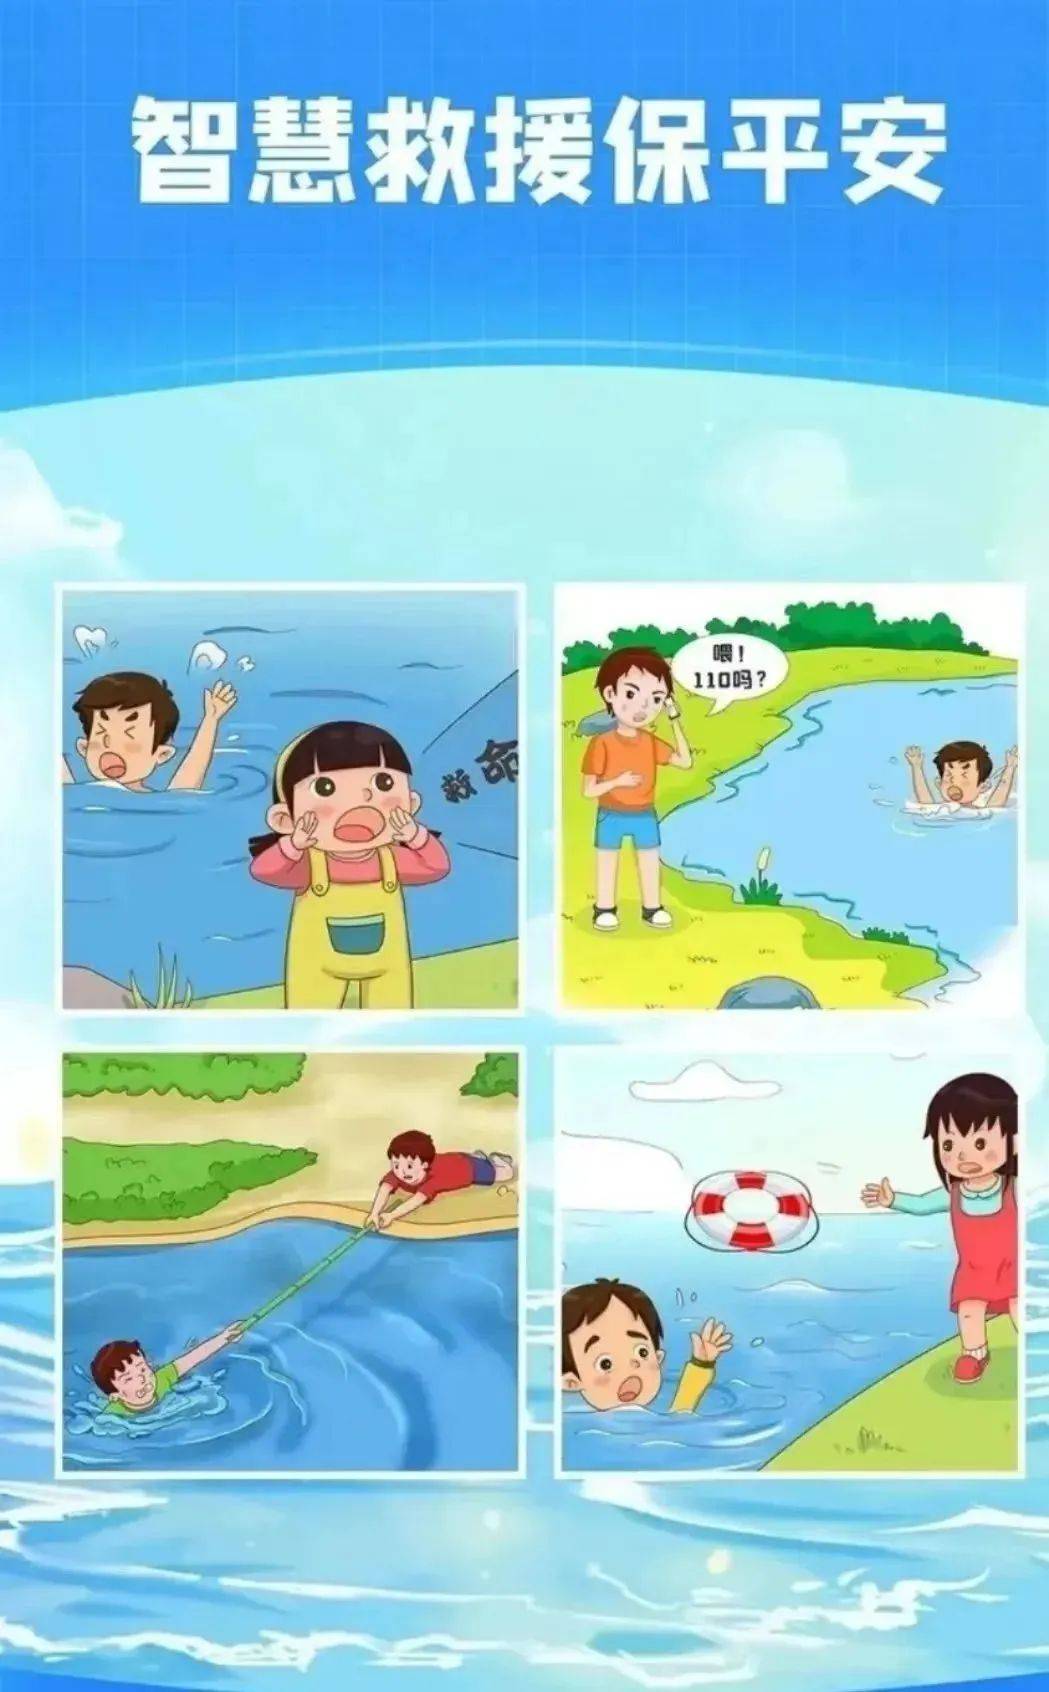 【12355暑期自护】防溺水安全知识,学起来!